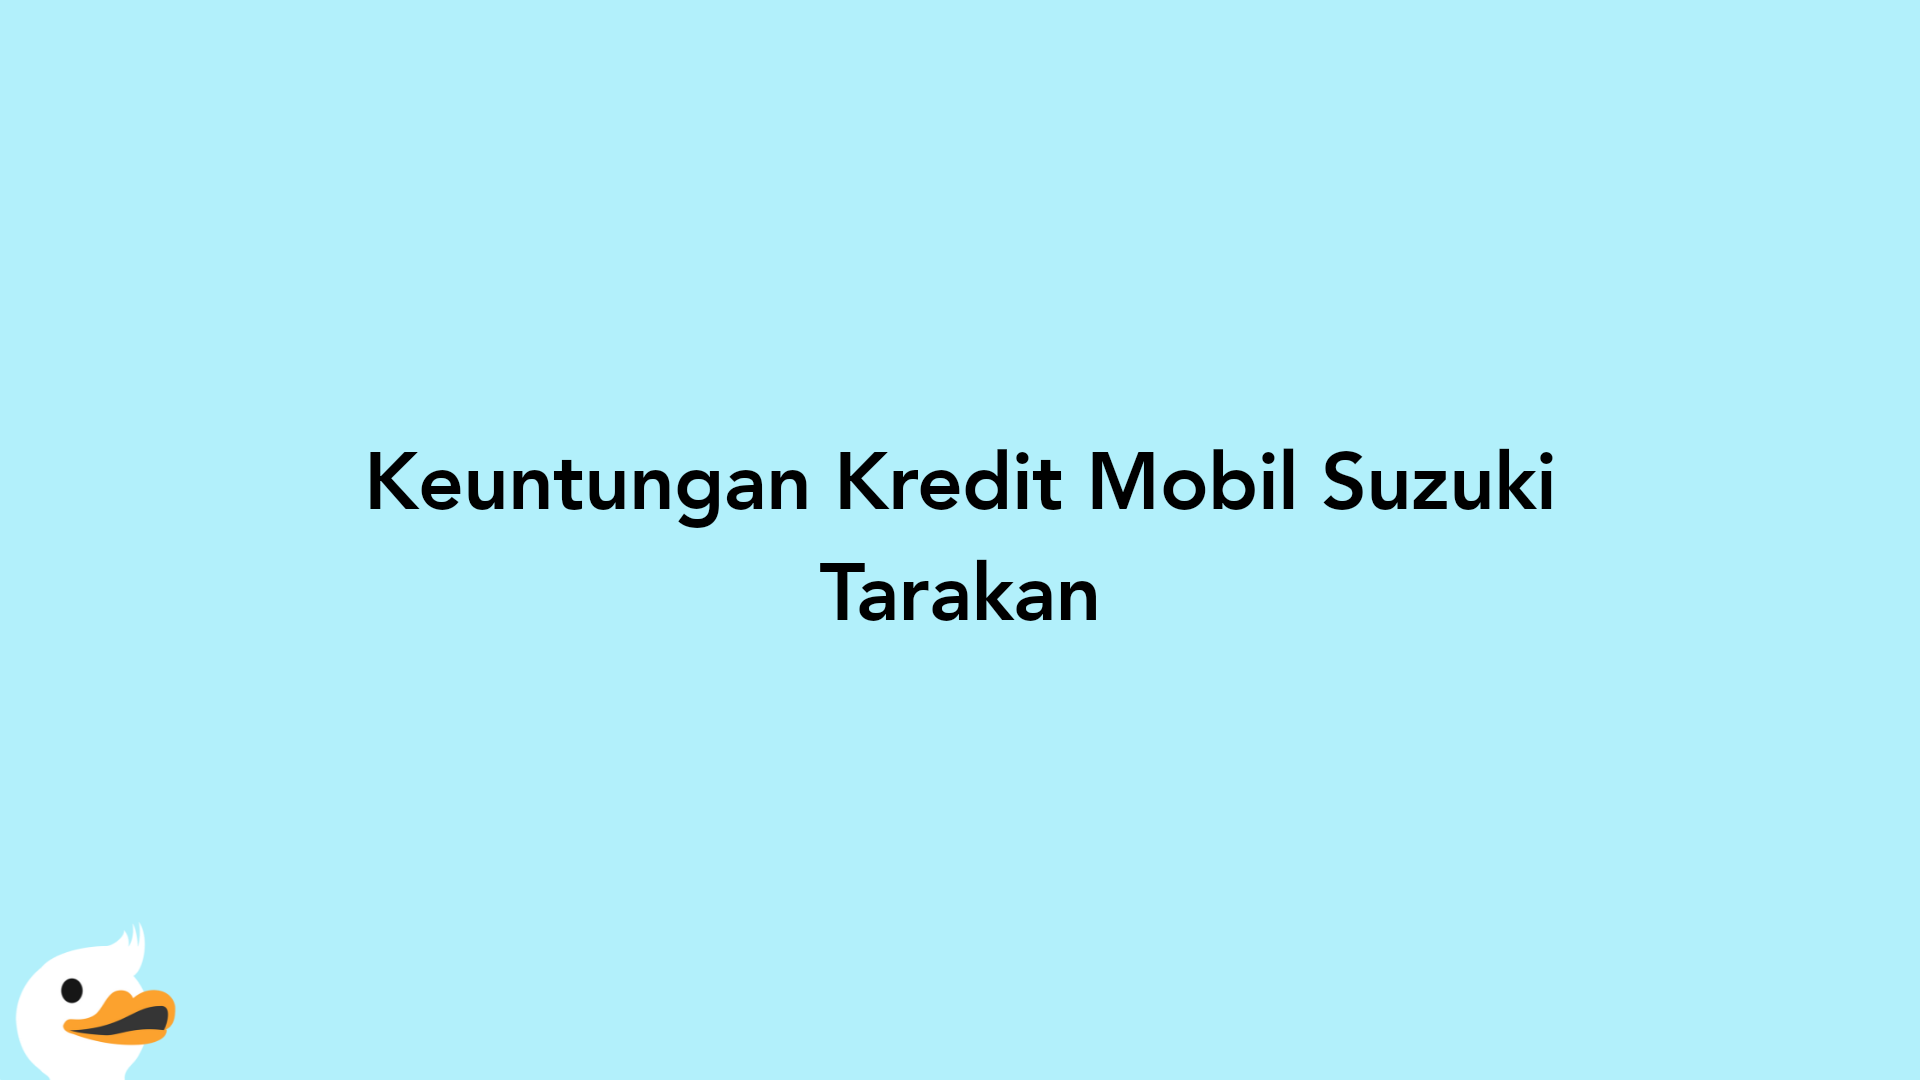 Keuntungan Kredit Mobil Suzuki Tarakan